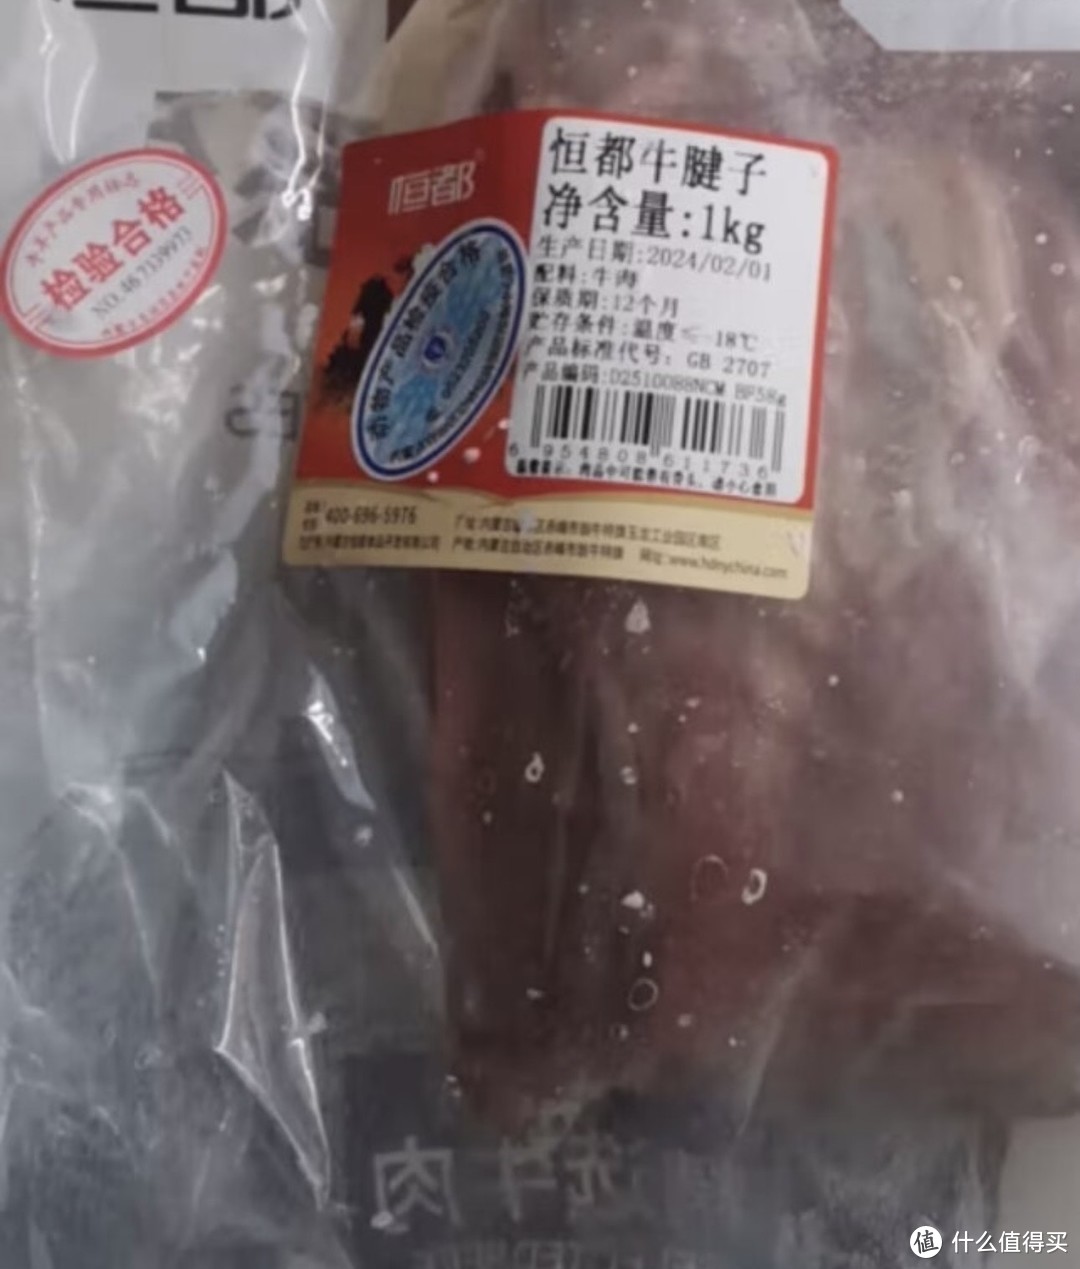 ￼￼恒都 国产原切牛腱子肉 2.5kg 冷冻 谷饲牛肉￼￼